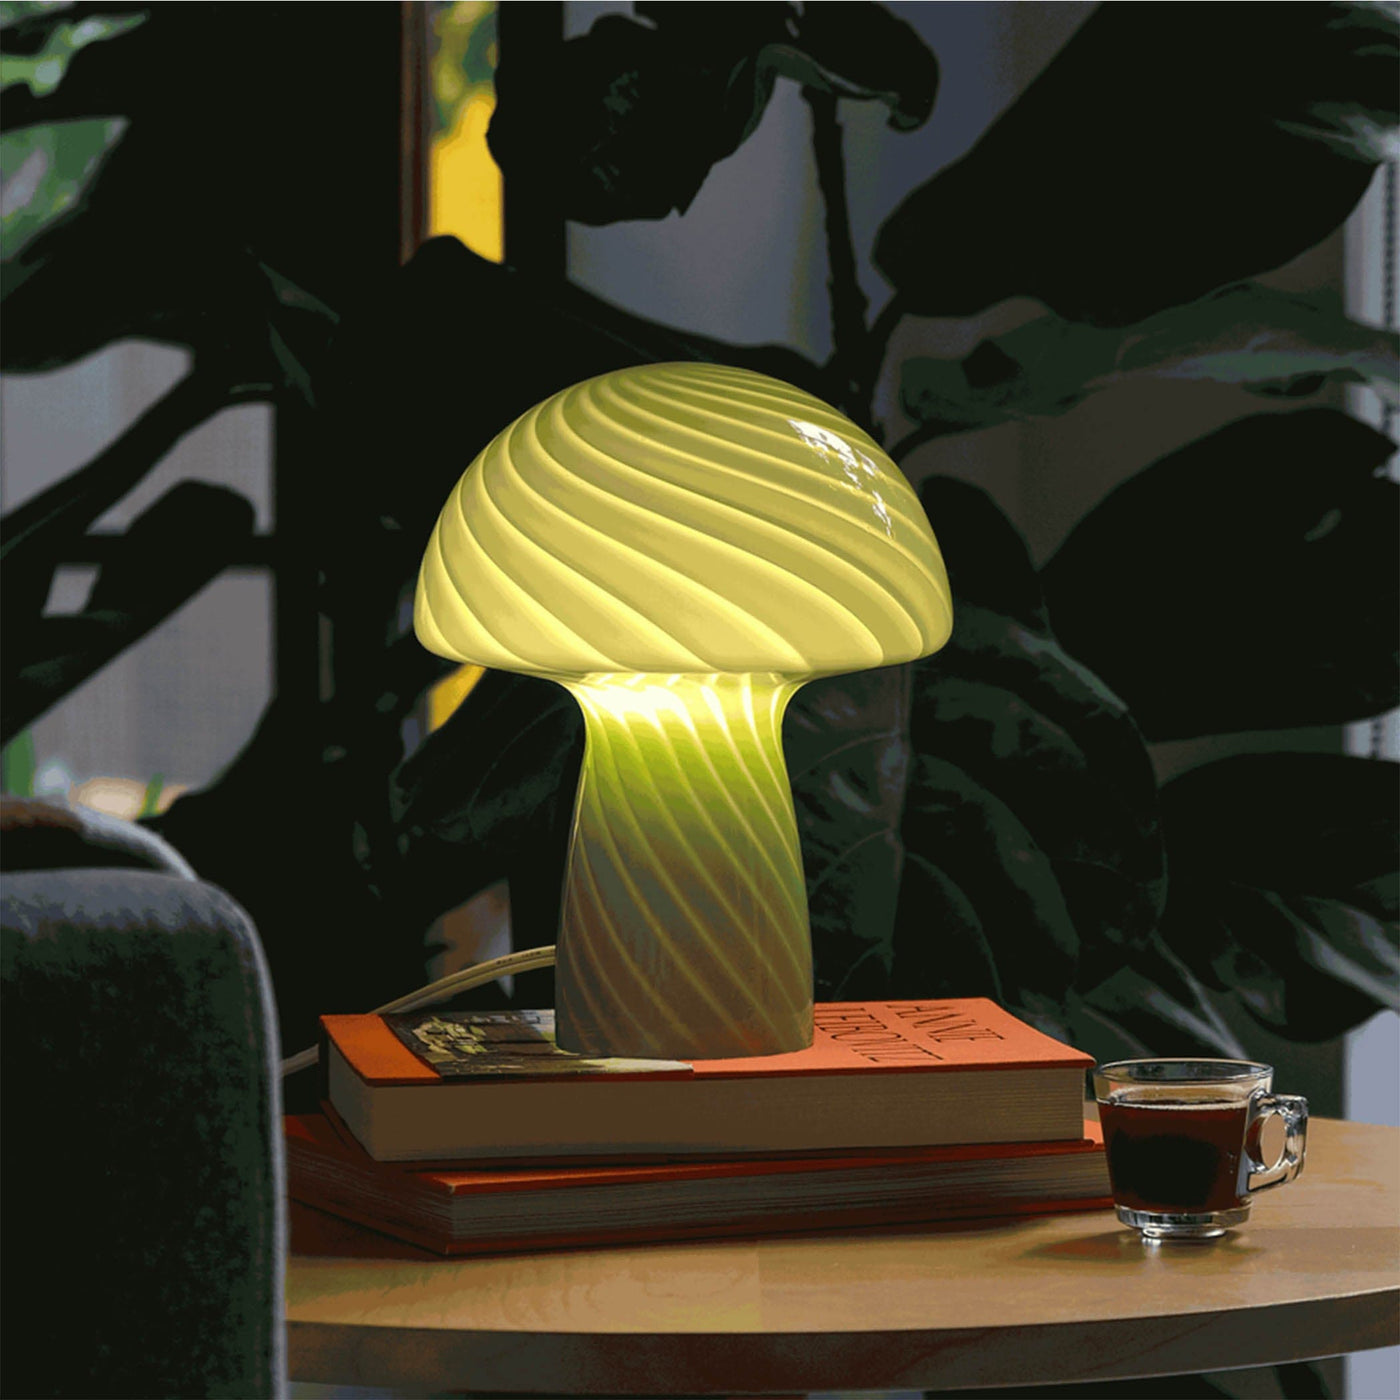 Découvrez l'élégance artisanale avec les lampes Champignon de Humber, des luminaires en verre semi-transparent, soigneusement peints à la main pour une ambiance chaleureuse et moderne.